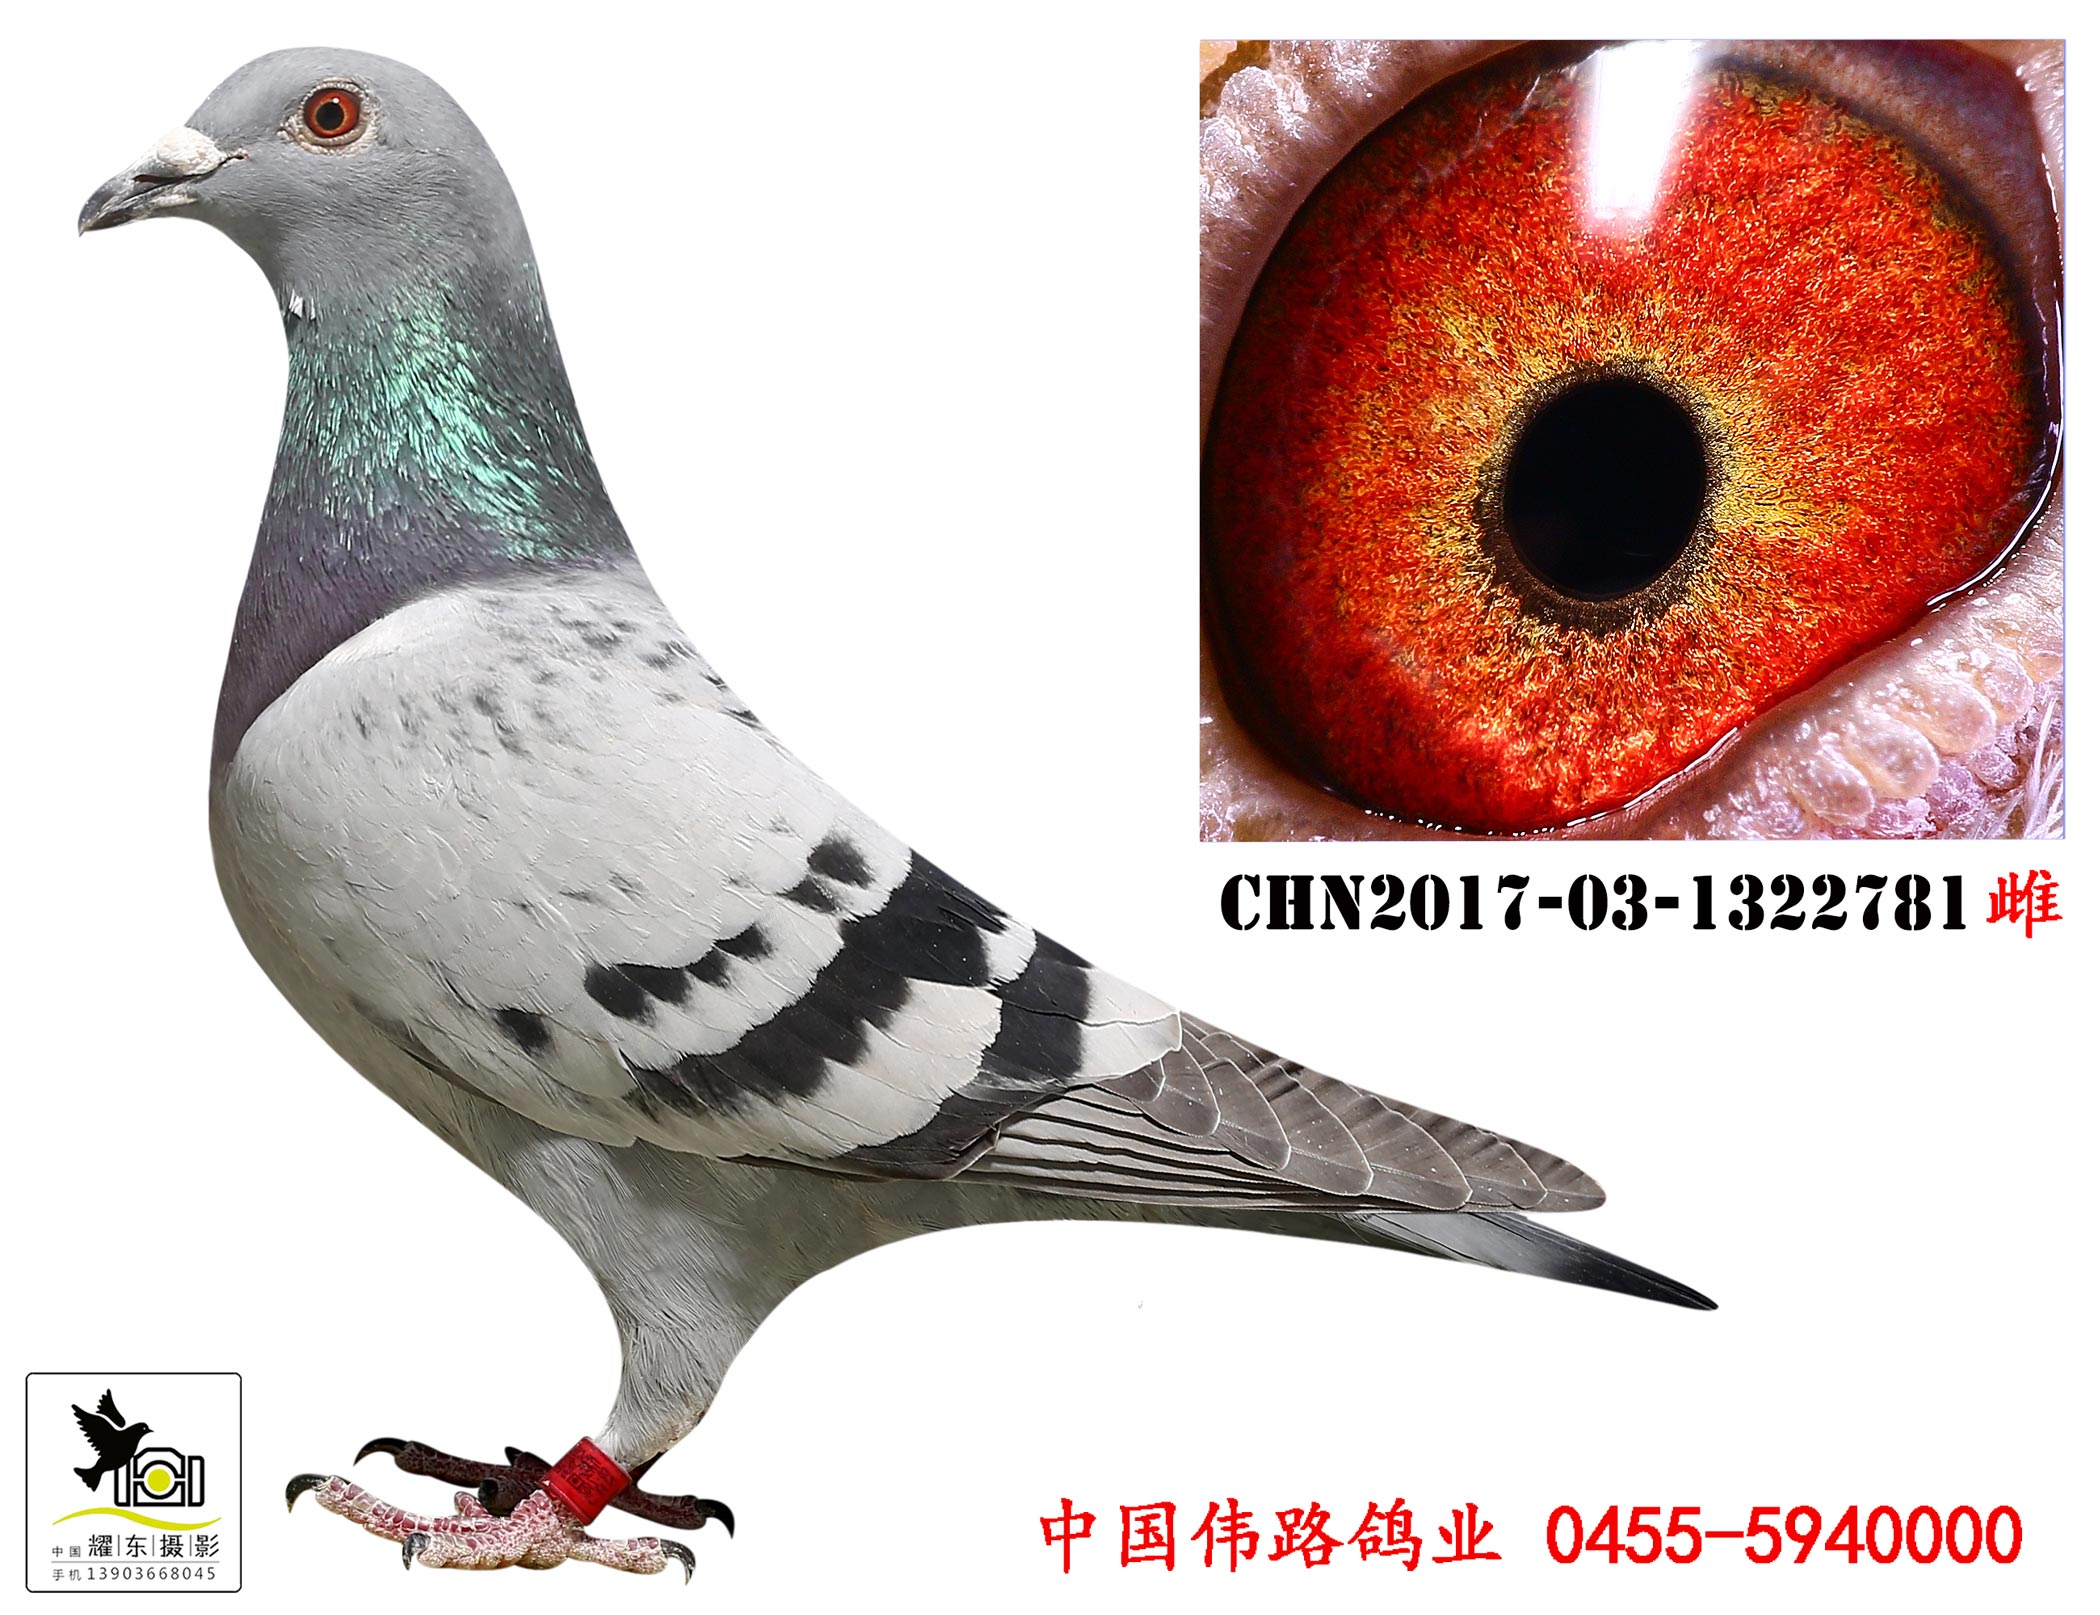 中国伟路鸽业 - 中信网铭鸽展厅 www.ag188.com